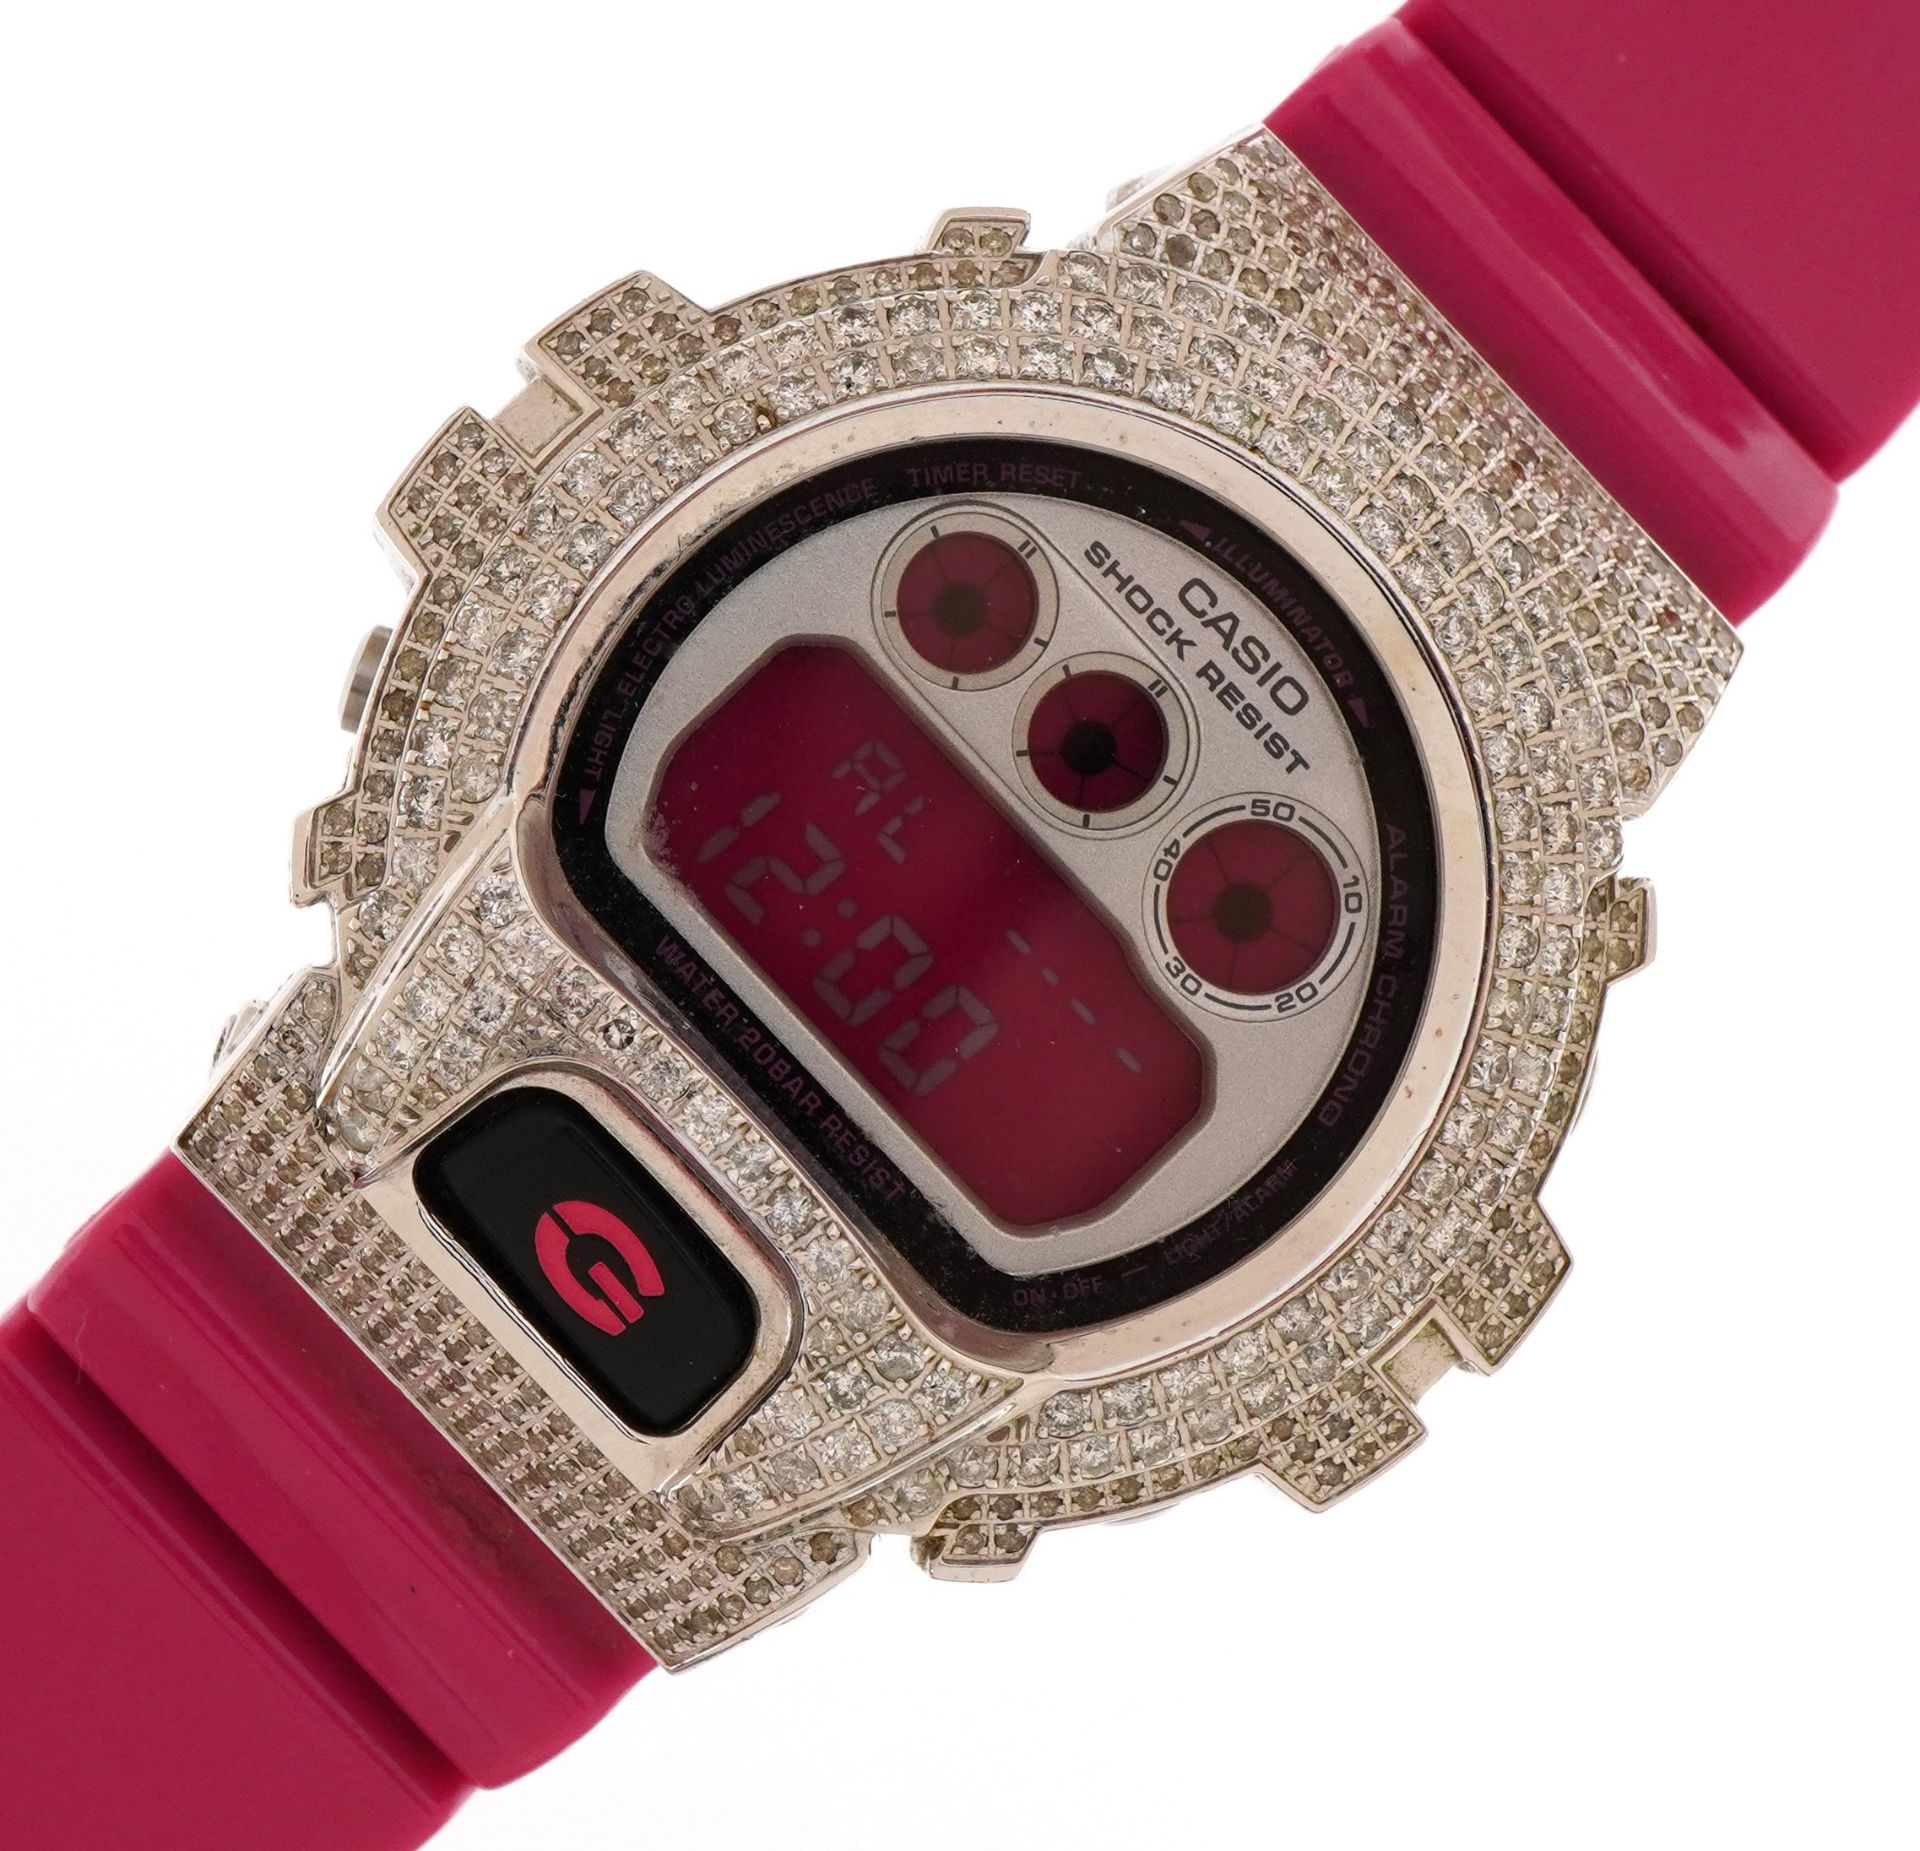 Casio, ladies Casio G-Shock wristwatch with diamond set bezel, the case 49mm wide